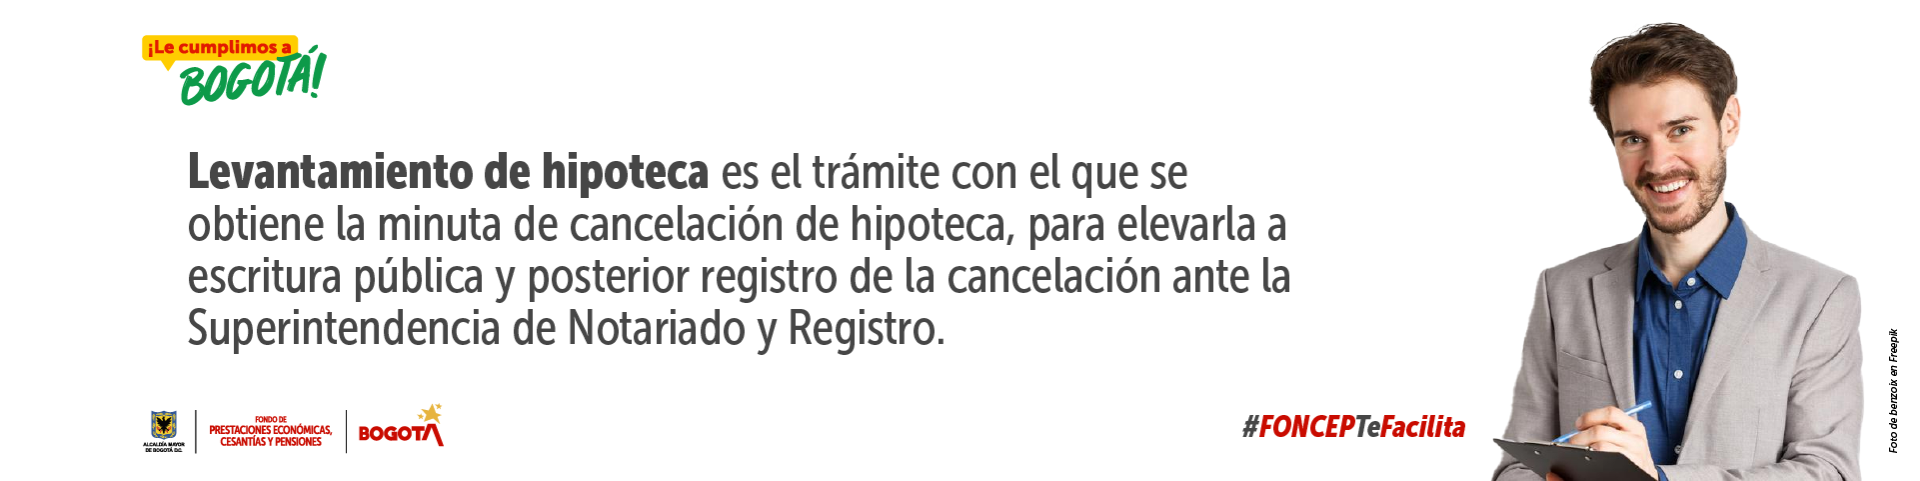 ¡Le cumplimos a Bogotá! - Levantamiento de hipoteca es el trámite con el que se obtiene la minuta de cancelación de hipoteca, para elevarla a escritura pública y posterior registro de la cancelación ante la Superintendencia de Notariado y Registro. 